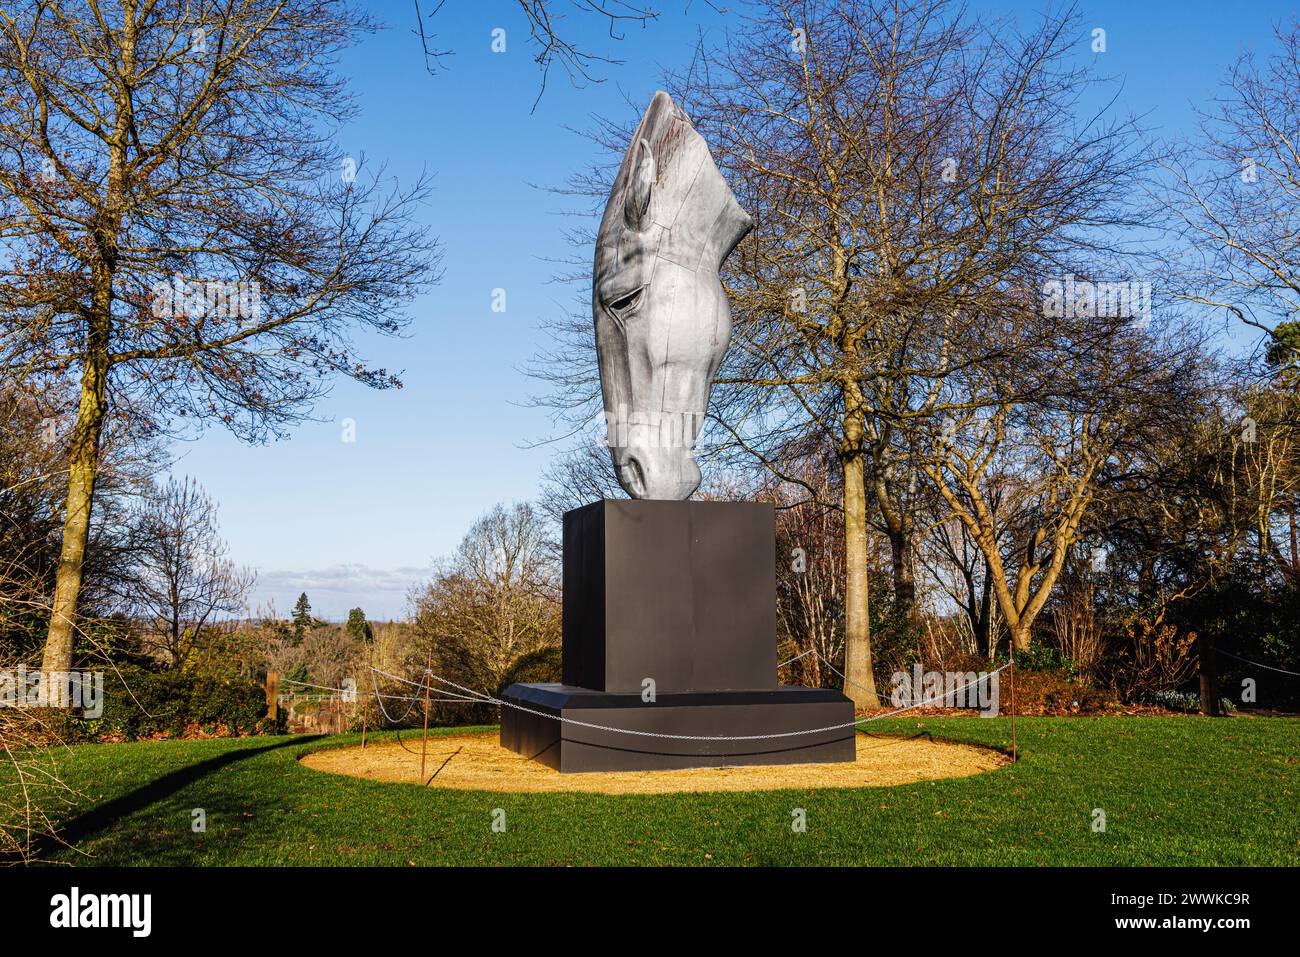 Grande sculpture métallique « en eau plate » de la tête d'un cheval par Nic Fiddian-Green au sommet de Battleston Hill au RHS Garden Wisley en hiver Banque D'Images